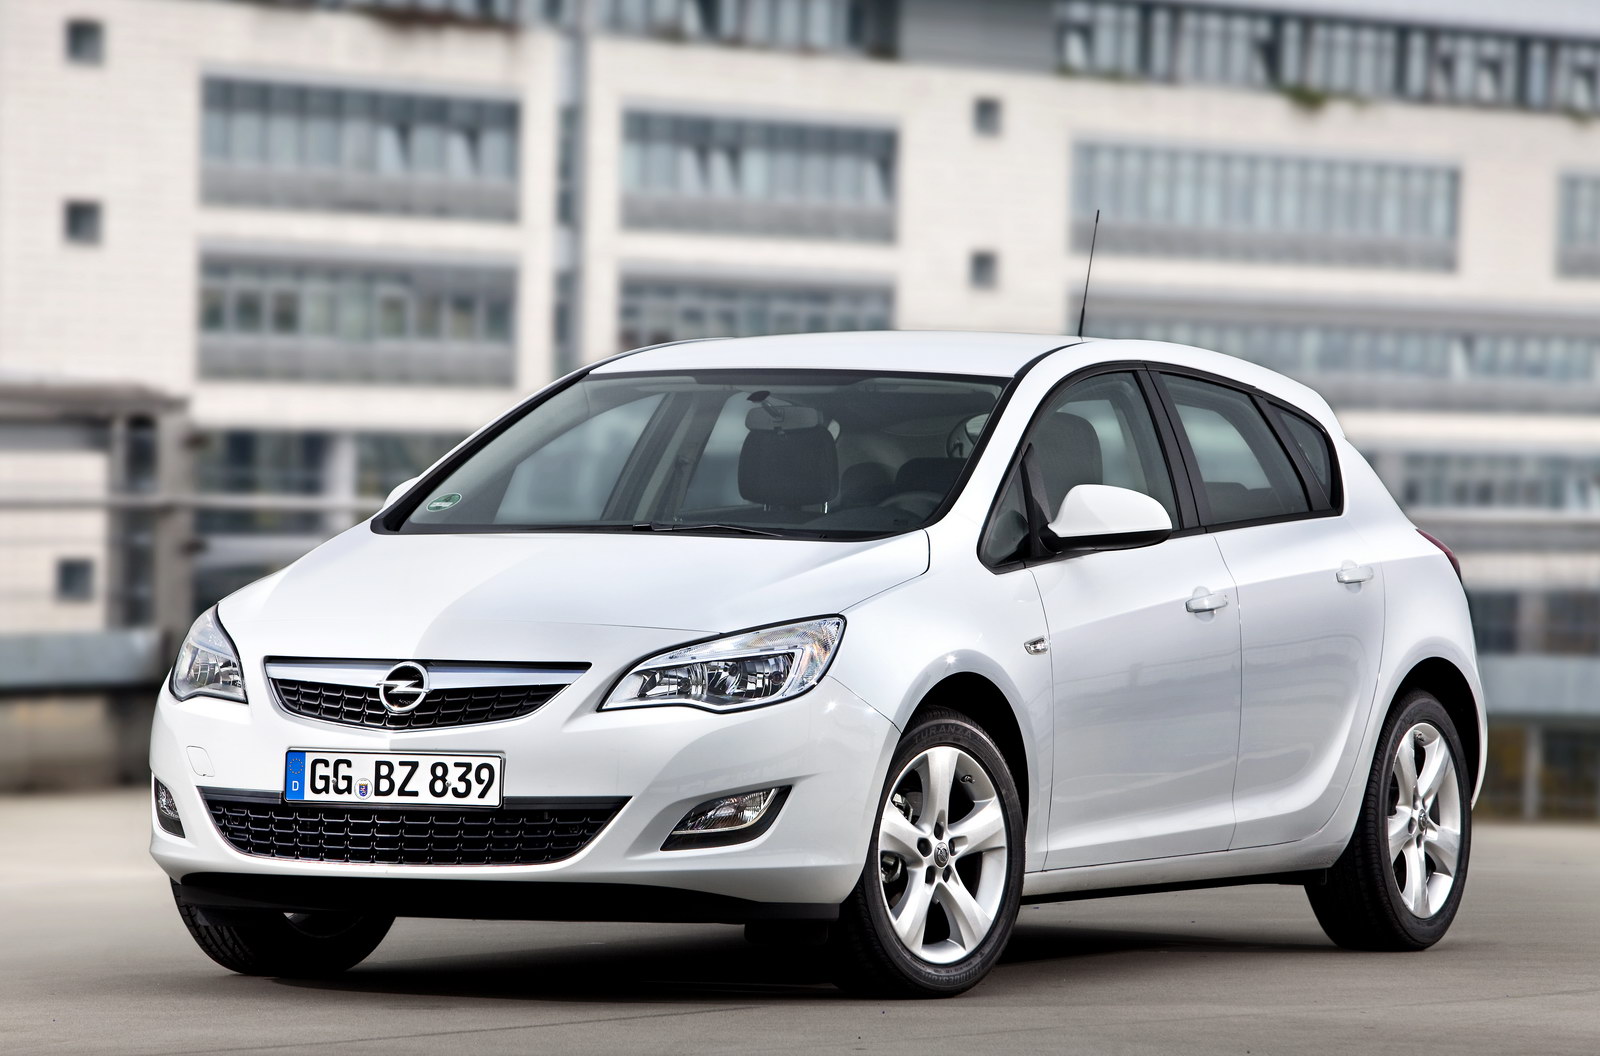  Yeni Opel Astra (Teknik Detaylar, Donanım Özellikleri ve Hakkında Herşey..)